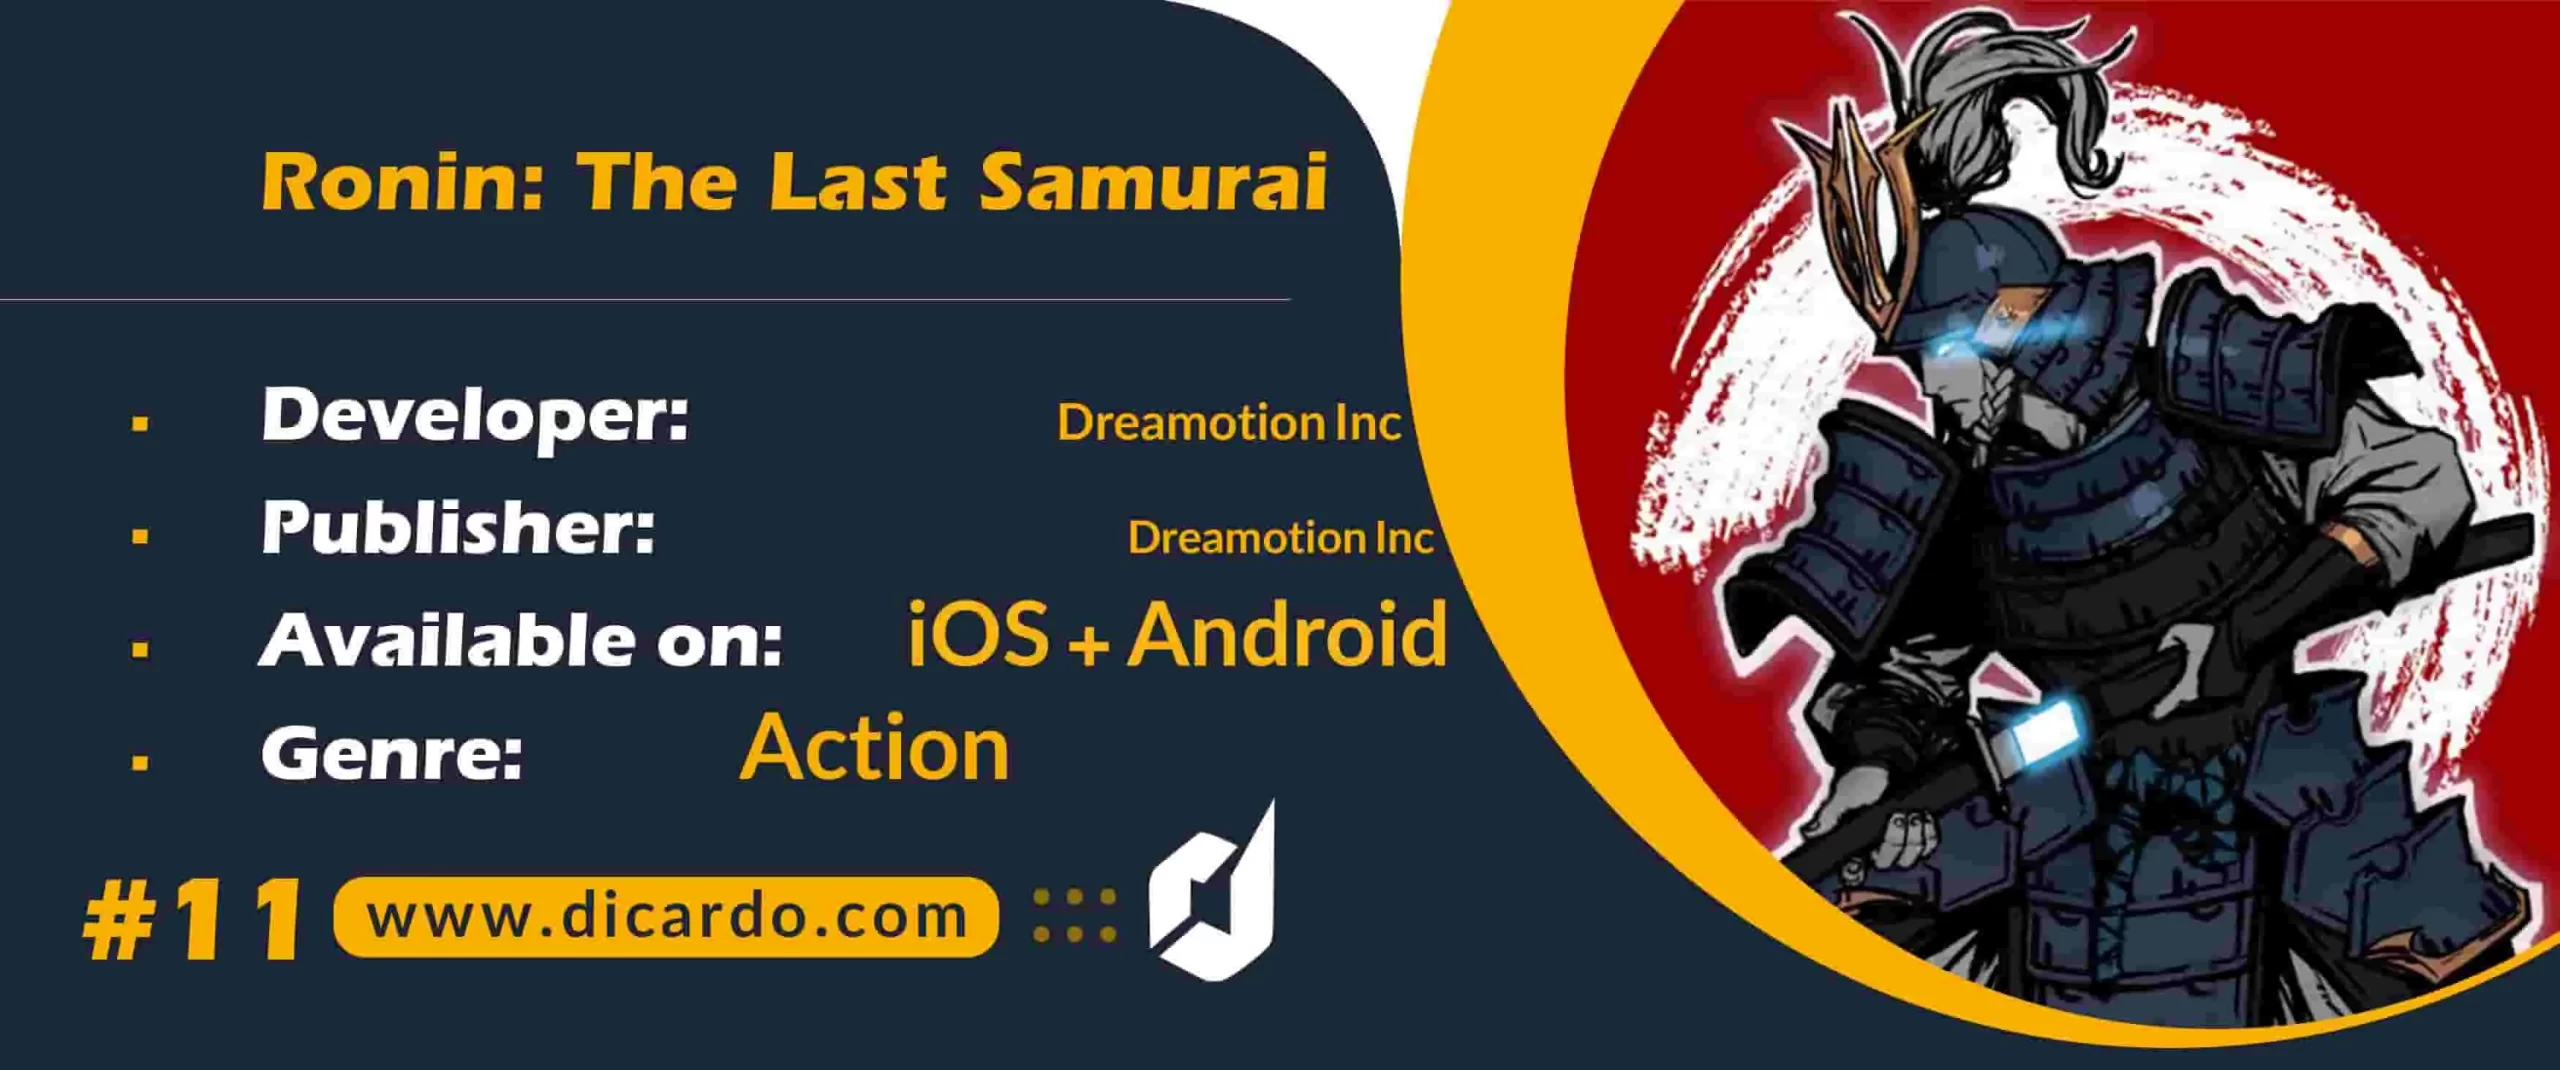 #11 رونین د لست سامورایی Ronin: The Last Samurai از بهترین بازیهای جنگی با اکشن نرم